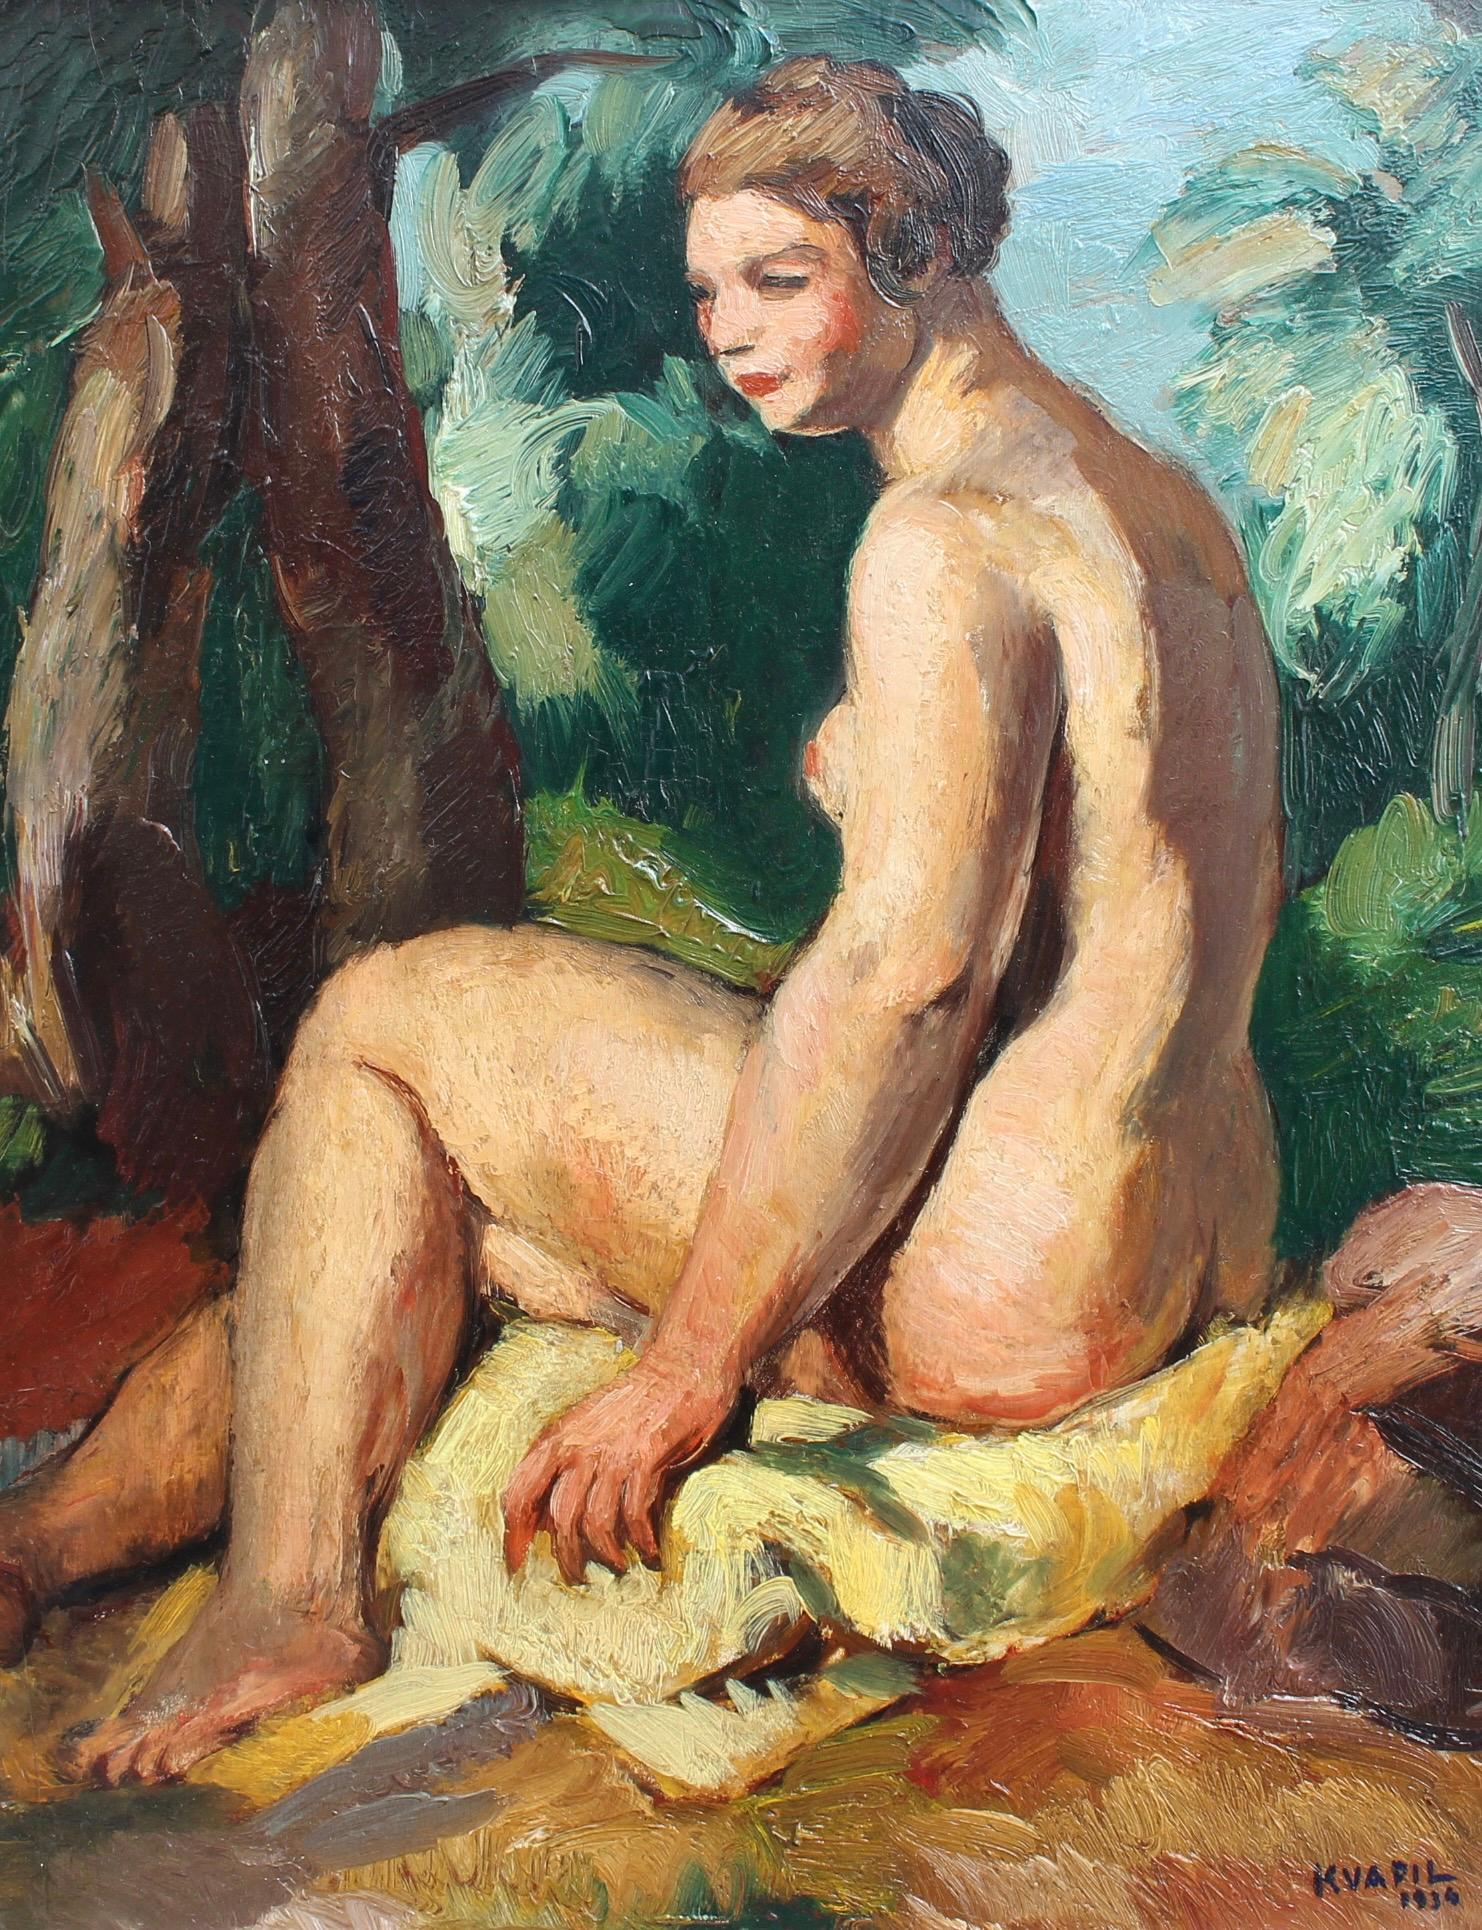 Portrait Painting Charles Kvapil - Le baigneur